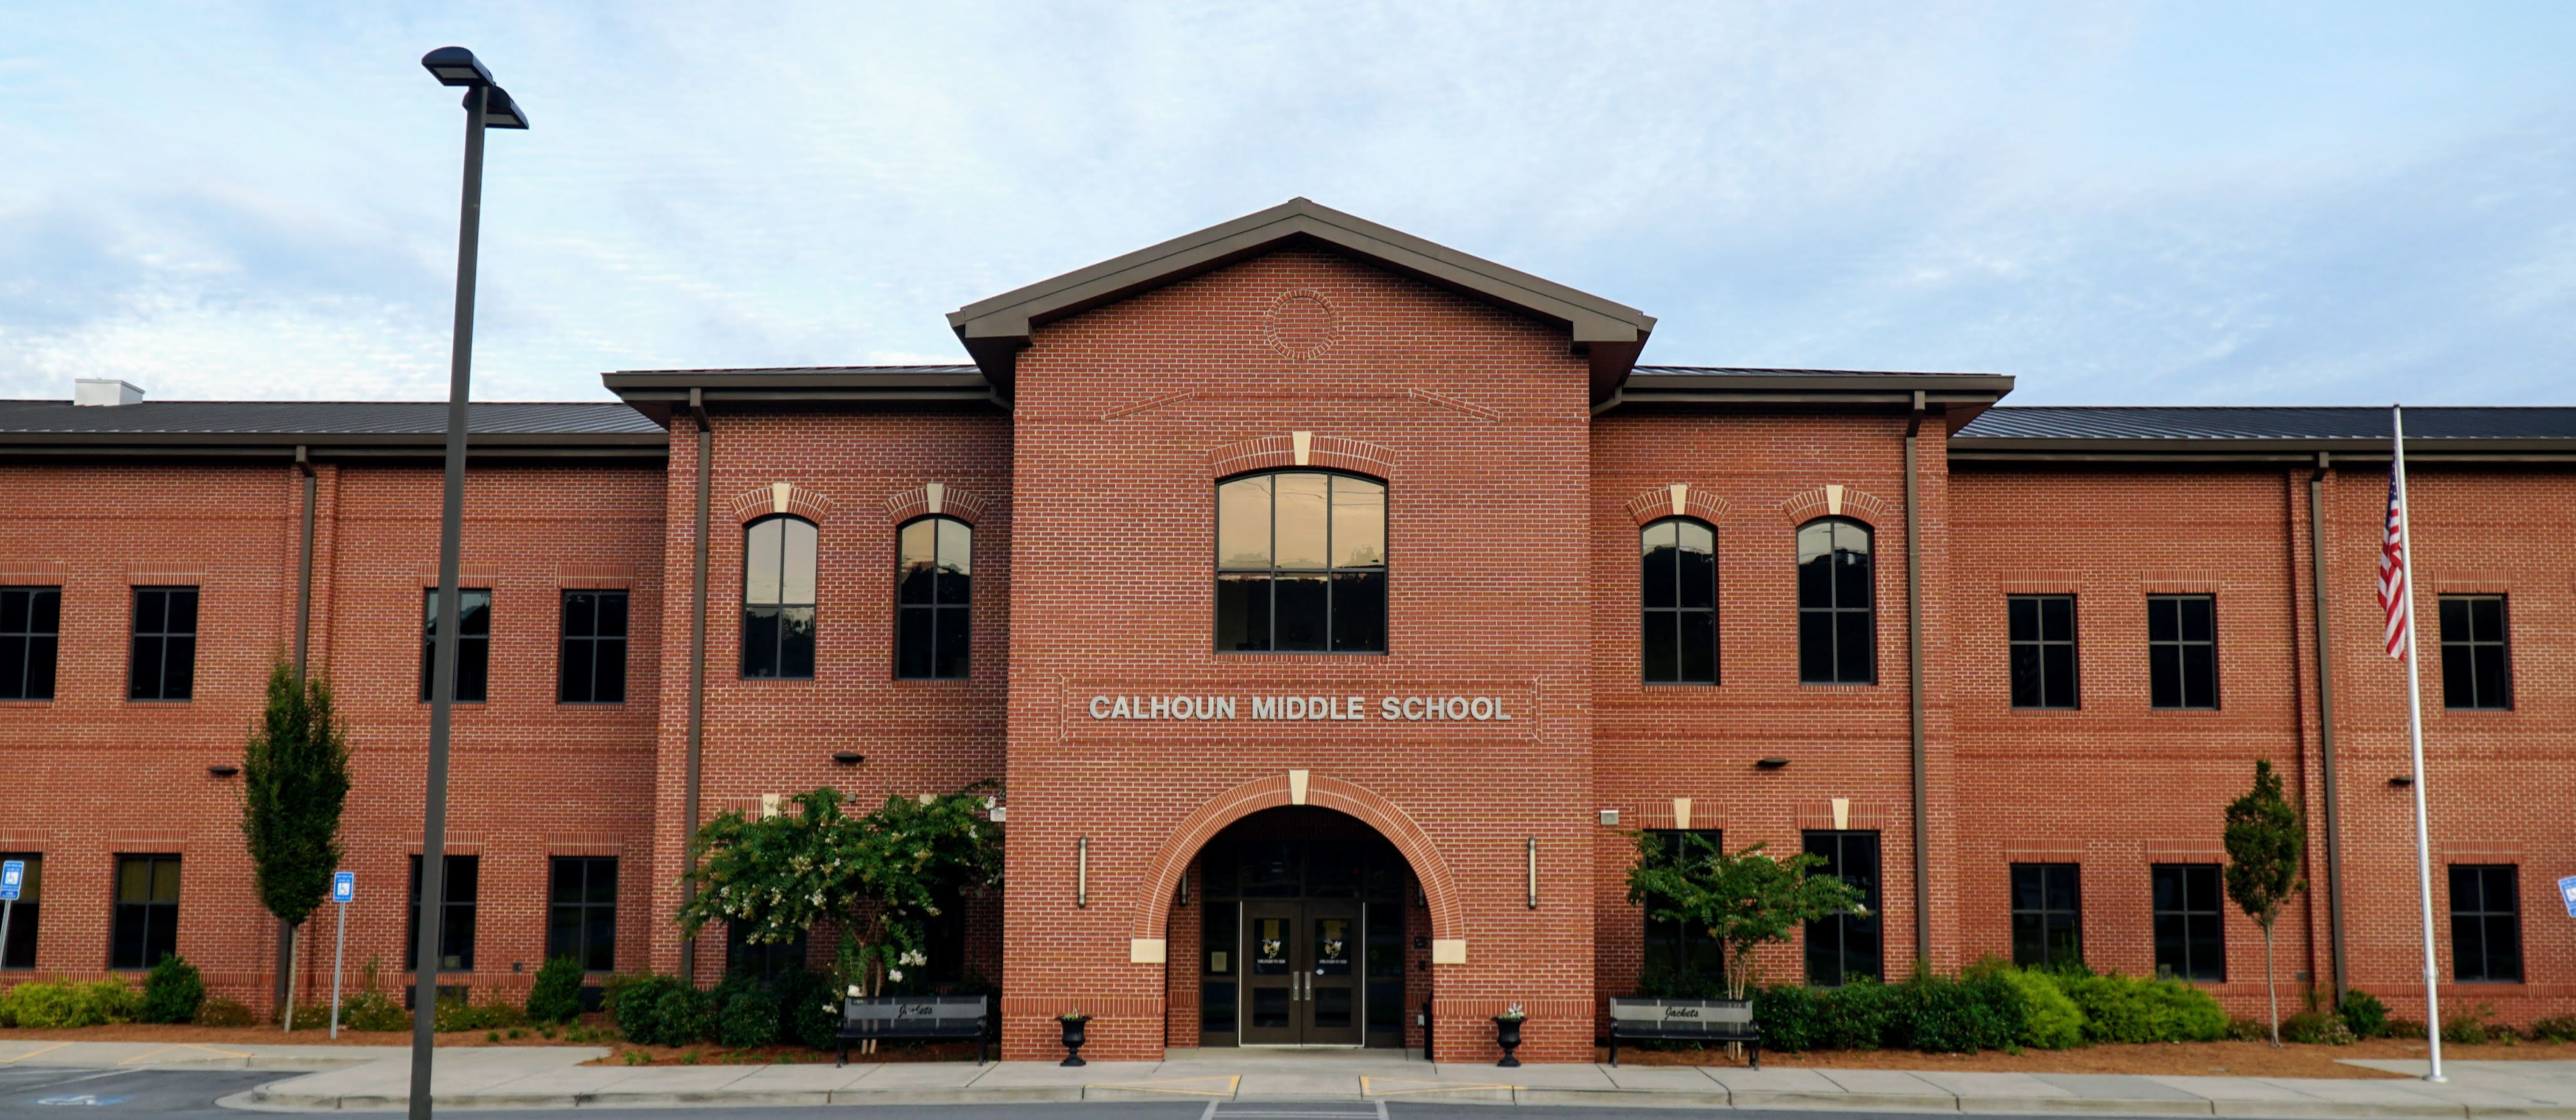 Calhoun Middle School